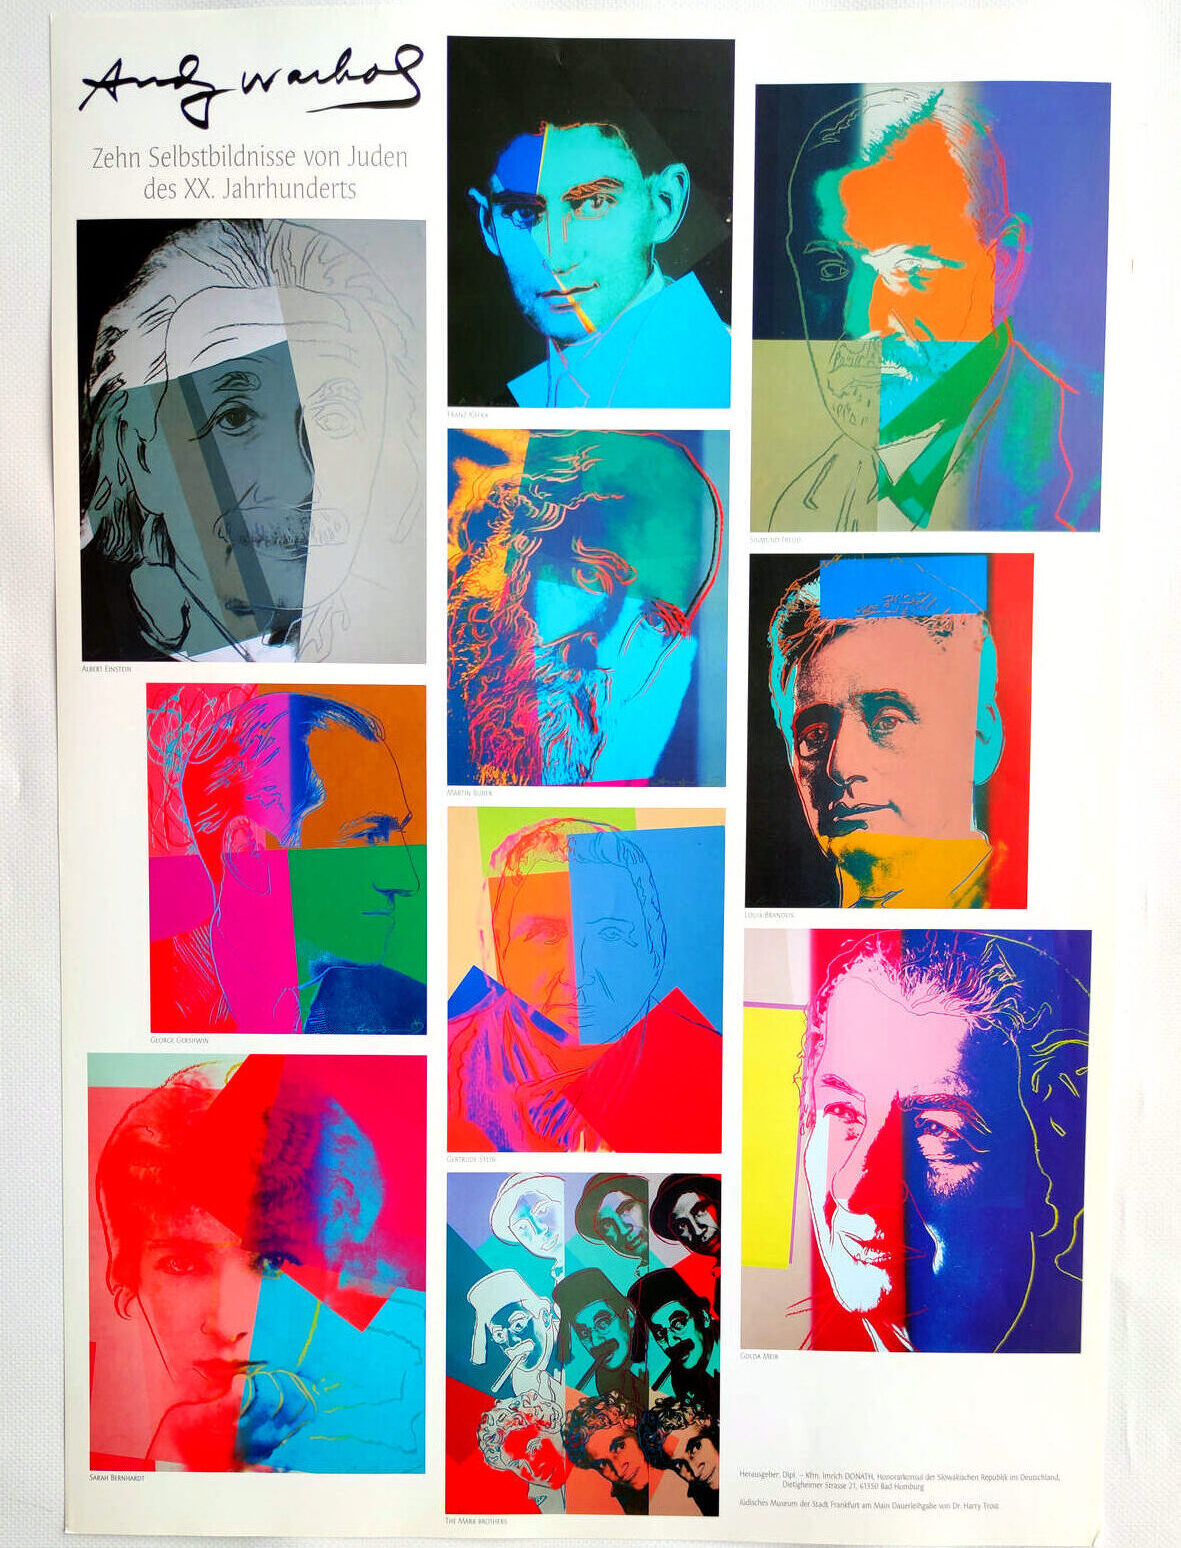 Zehn Selbstbildnisse von Juden des XX. Jahrhunderts, Poster, (c) the Andy Warhol Foundation for The Visual Arts, Inc., Kunstposter mit Spnede für gemeinnütziges Engagement, mit freundlicher Genehmigung der AKIM e.V.